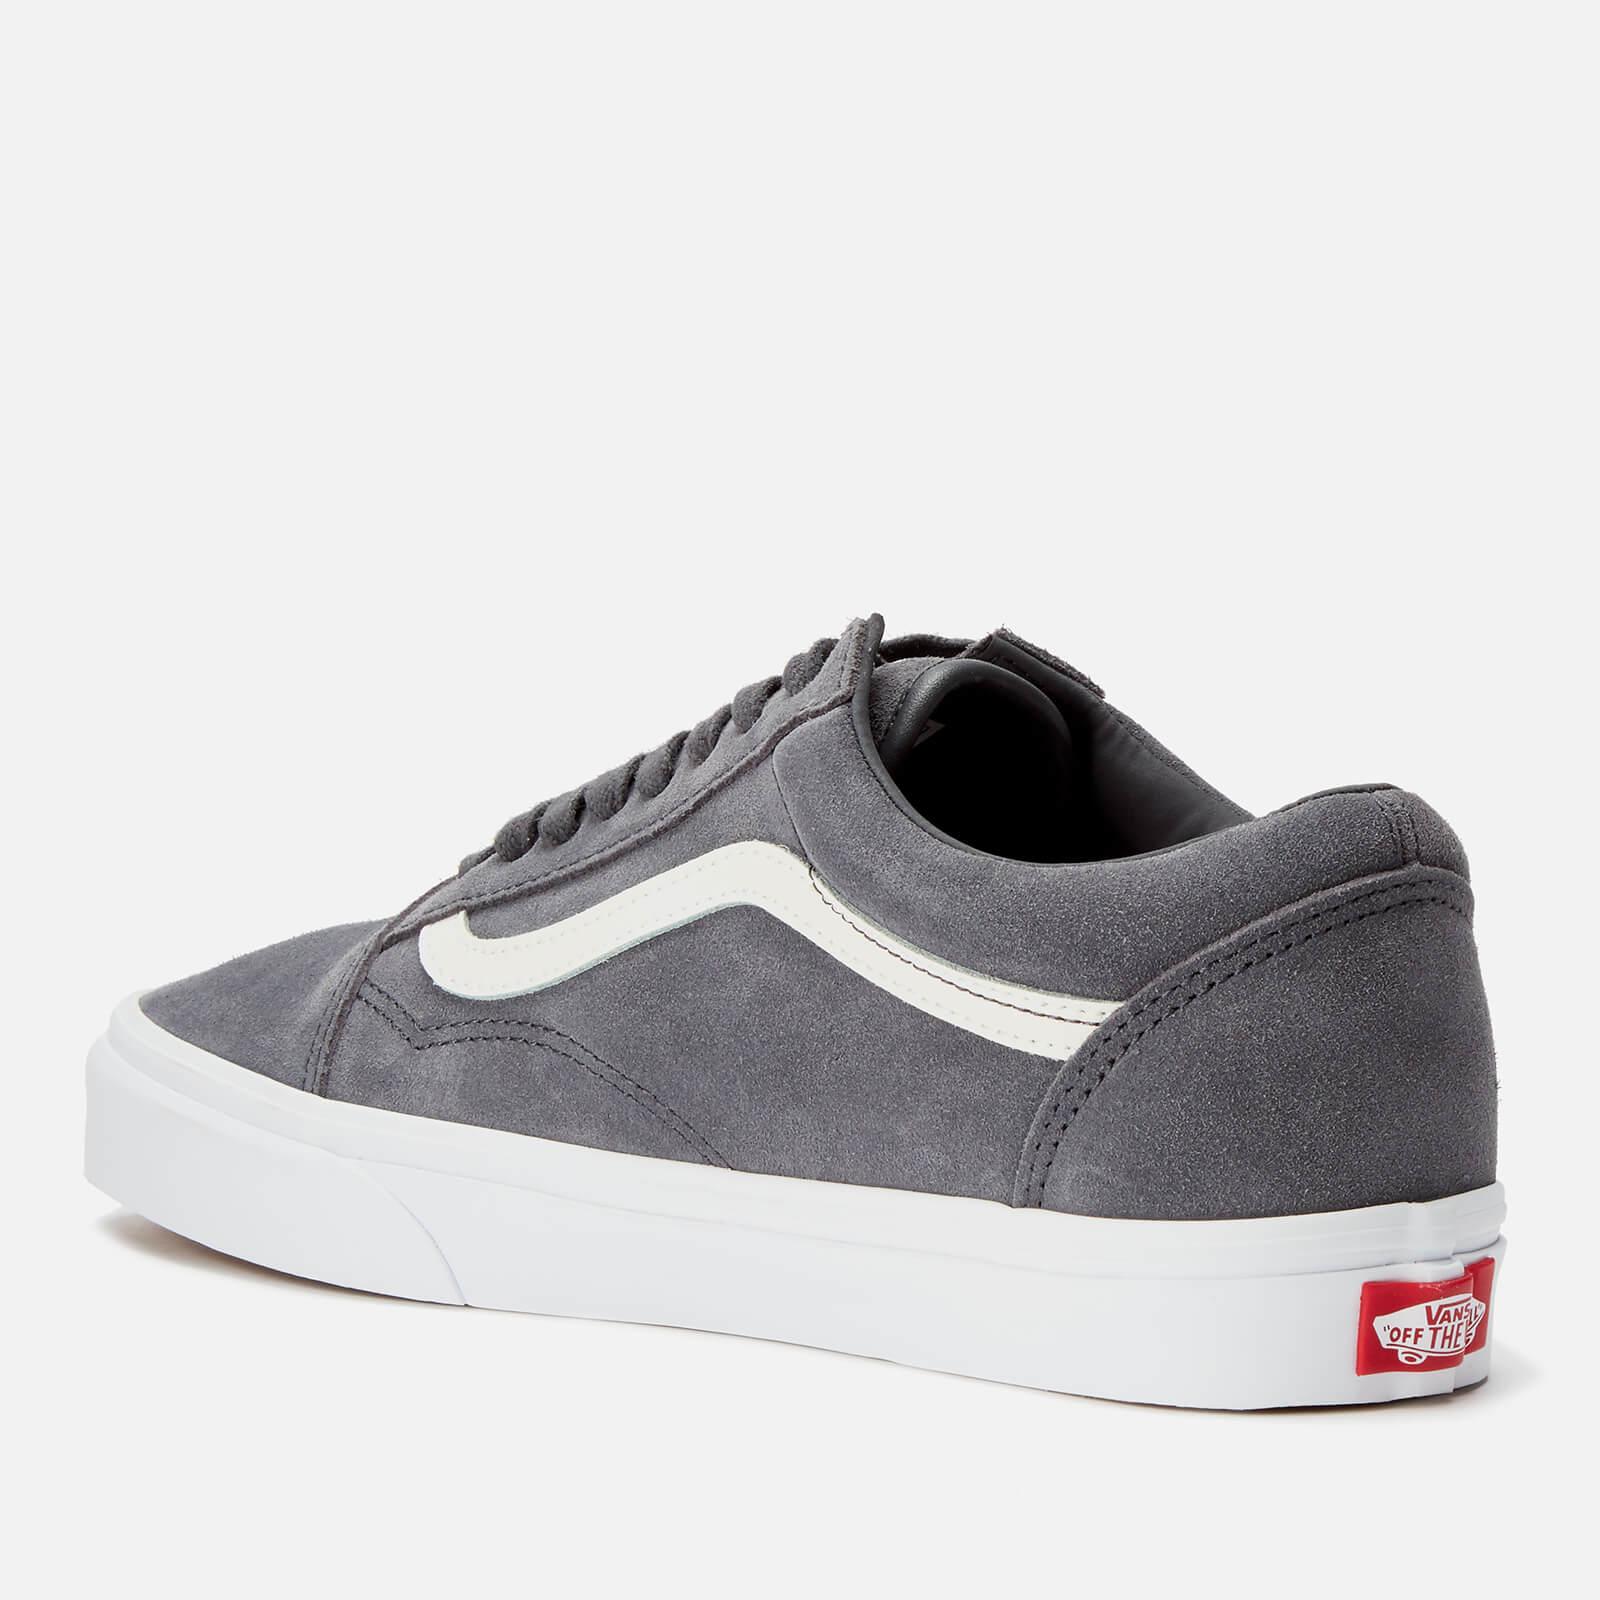 Vans Suede Old Skool Shoes in Grey 